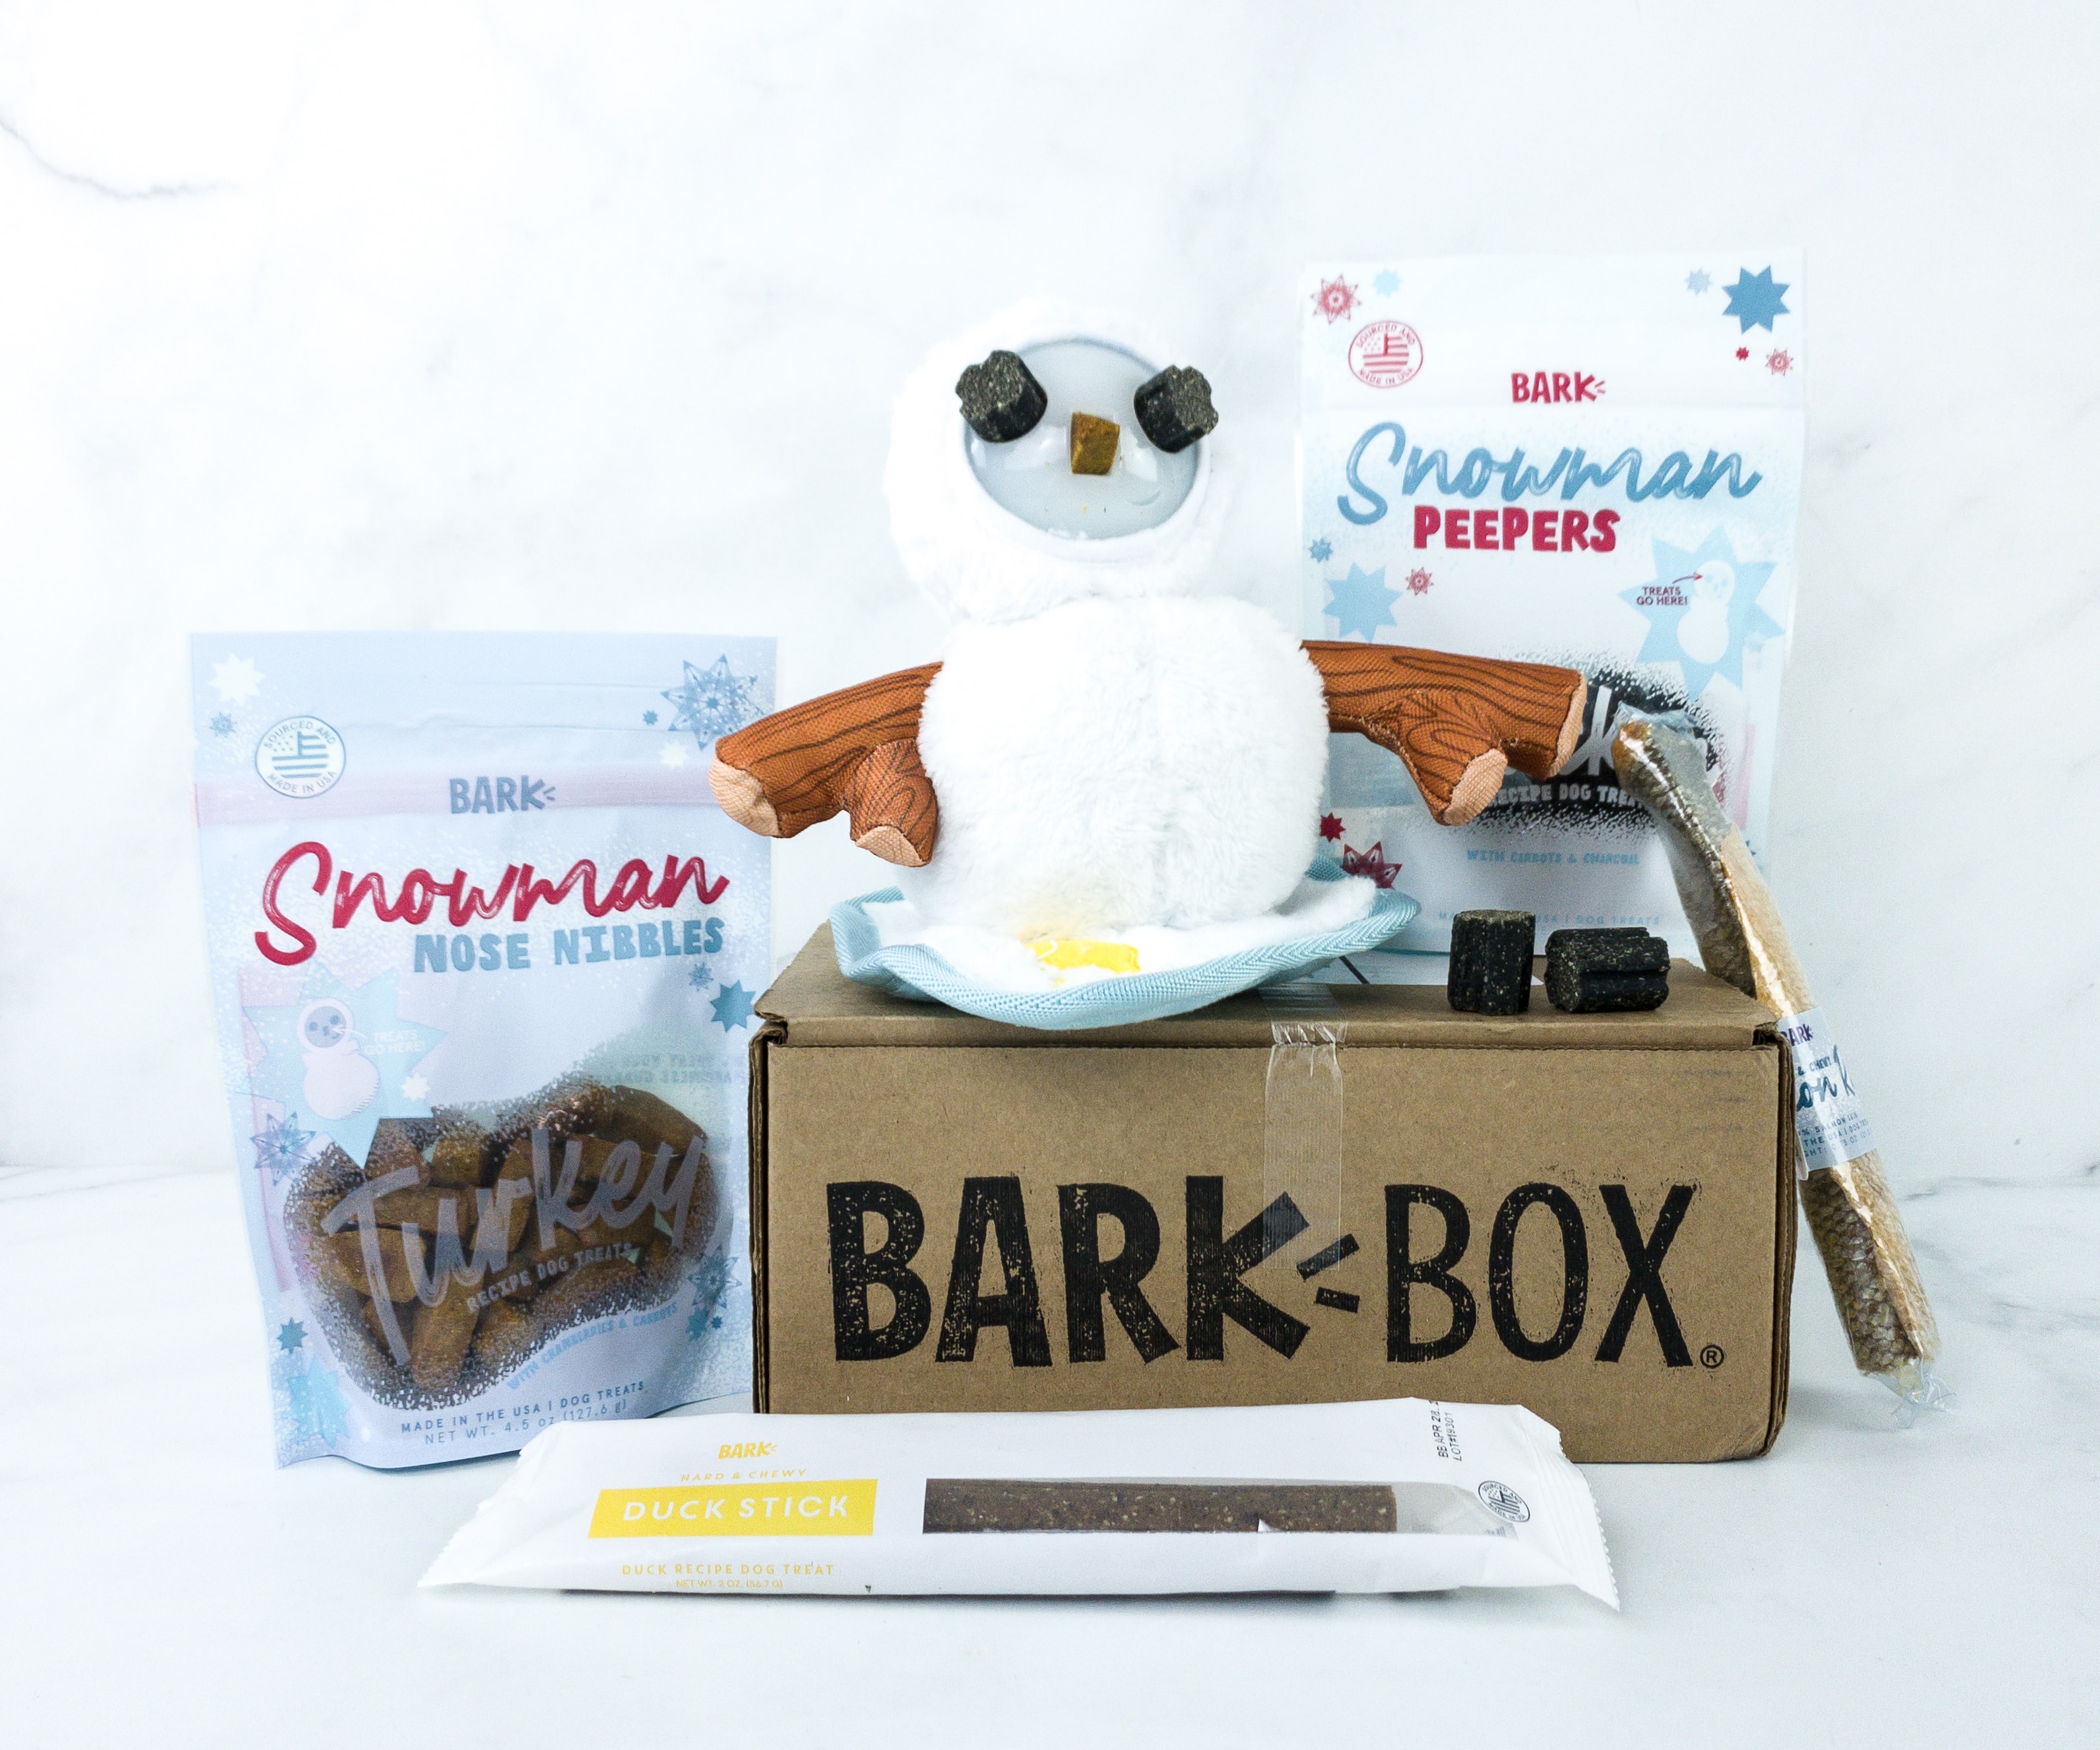 Barkbox January 2020 Subscription Box